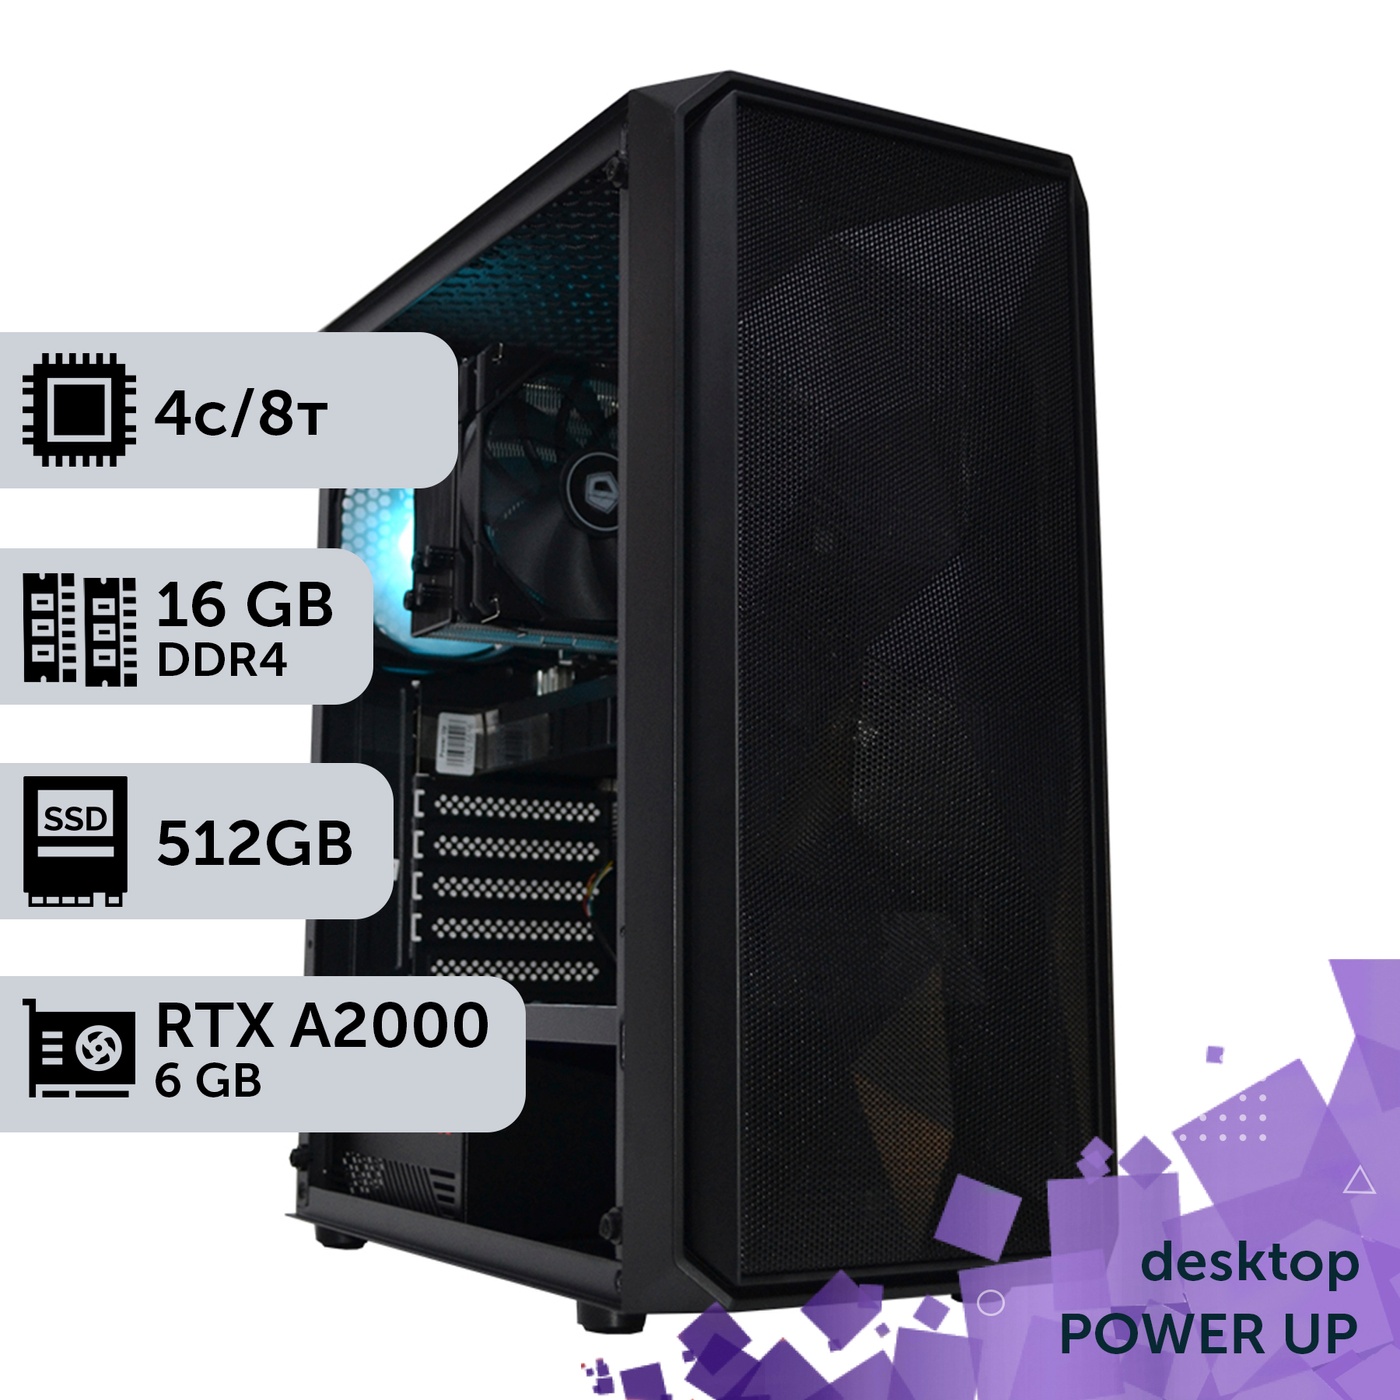 Рабочая станция PowerUp Desktop #233 Core i3 10100F/16 GB/SSD 512GB/NVIDIA Quadro RTX A2000 6GB